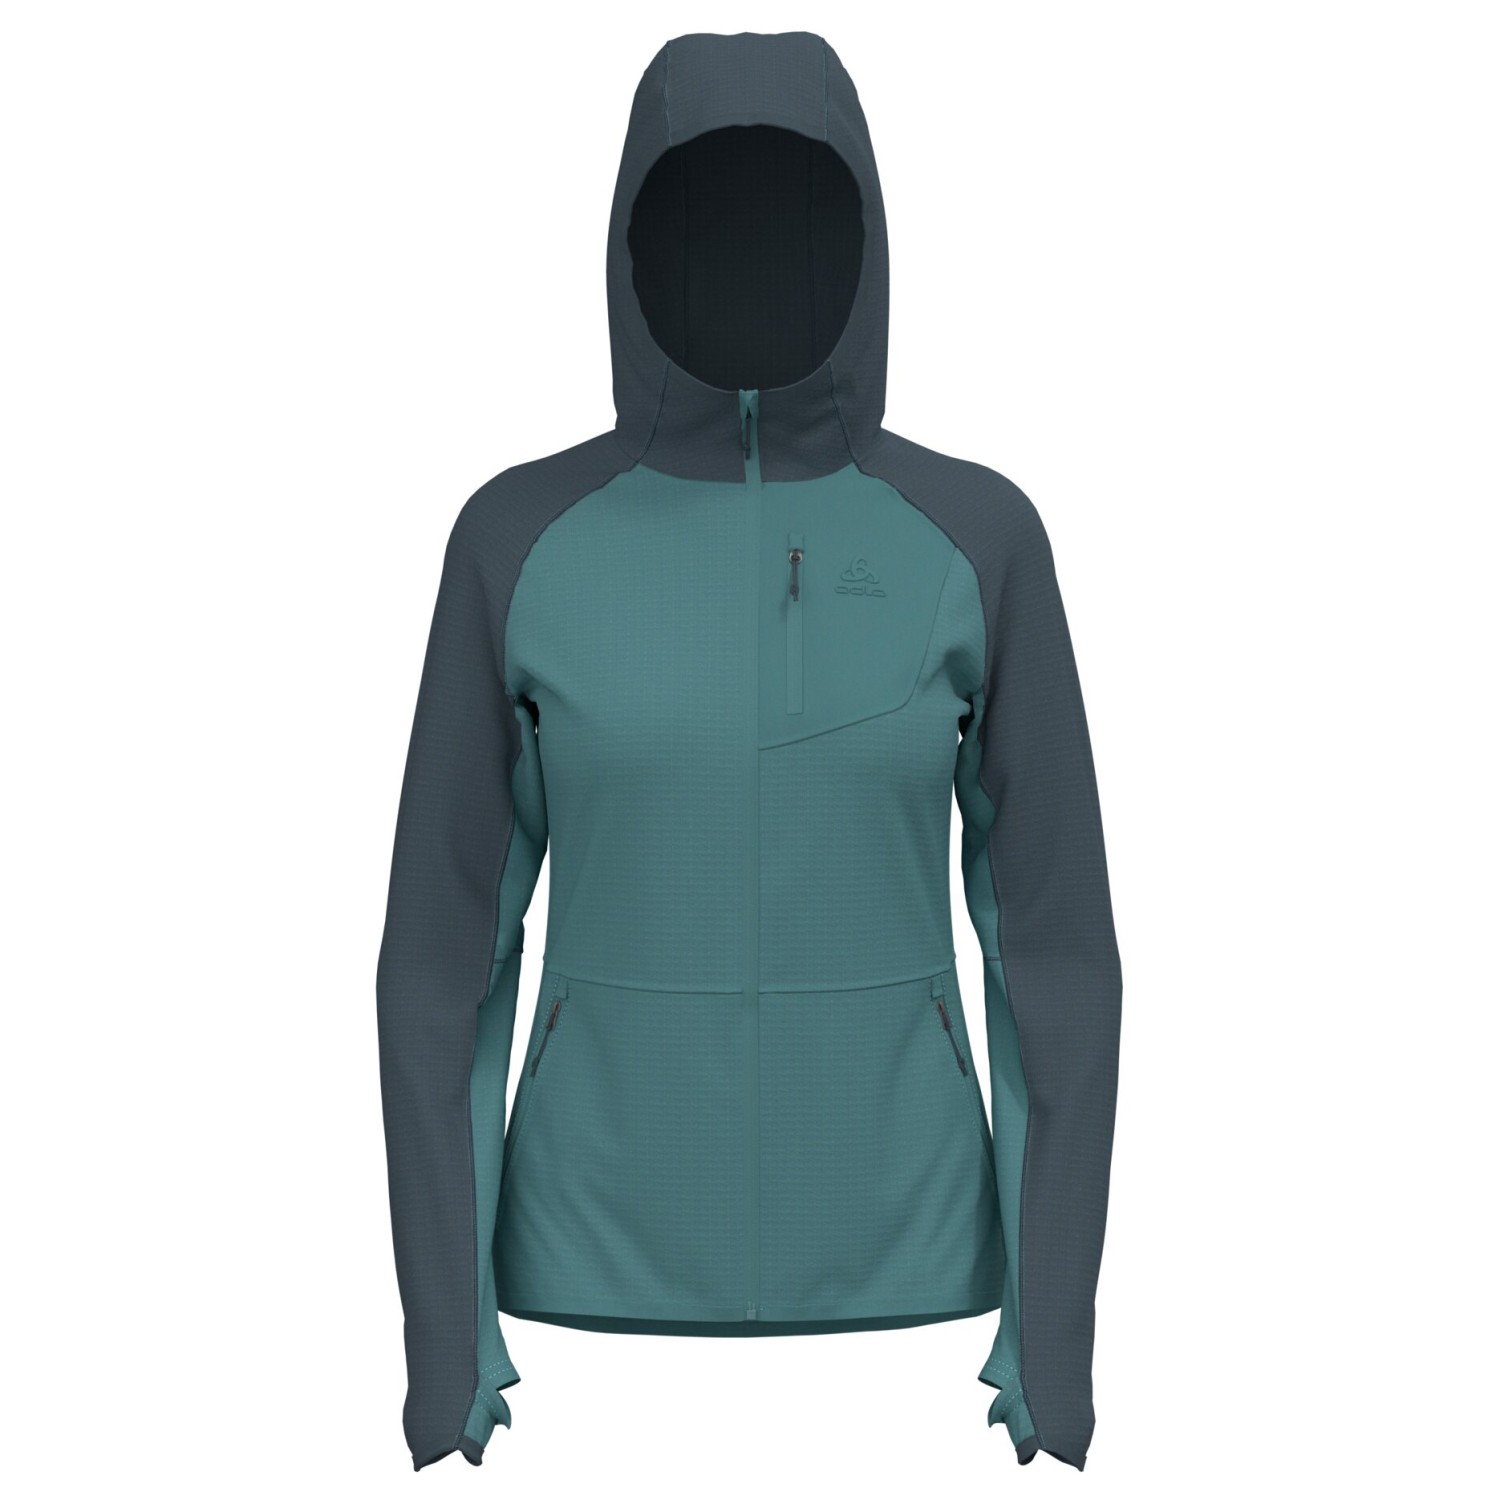 Флисовая жилетка Odlo Women's Ascent Mid Layer Hoody Full Zip, цвет Arctic/Dark Slate куртка для активного отдыха odlo черный